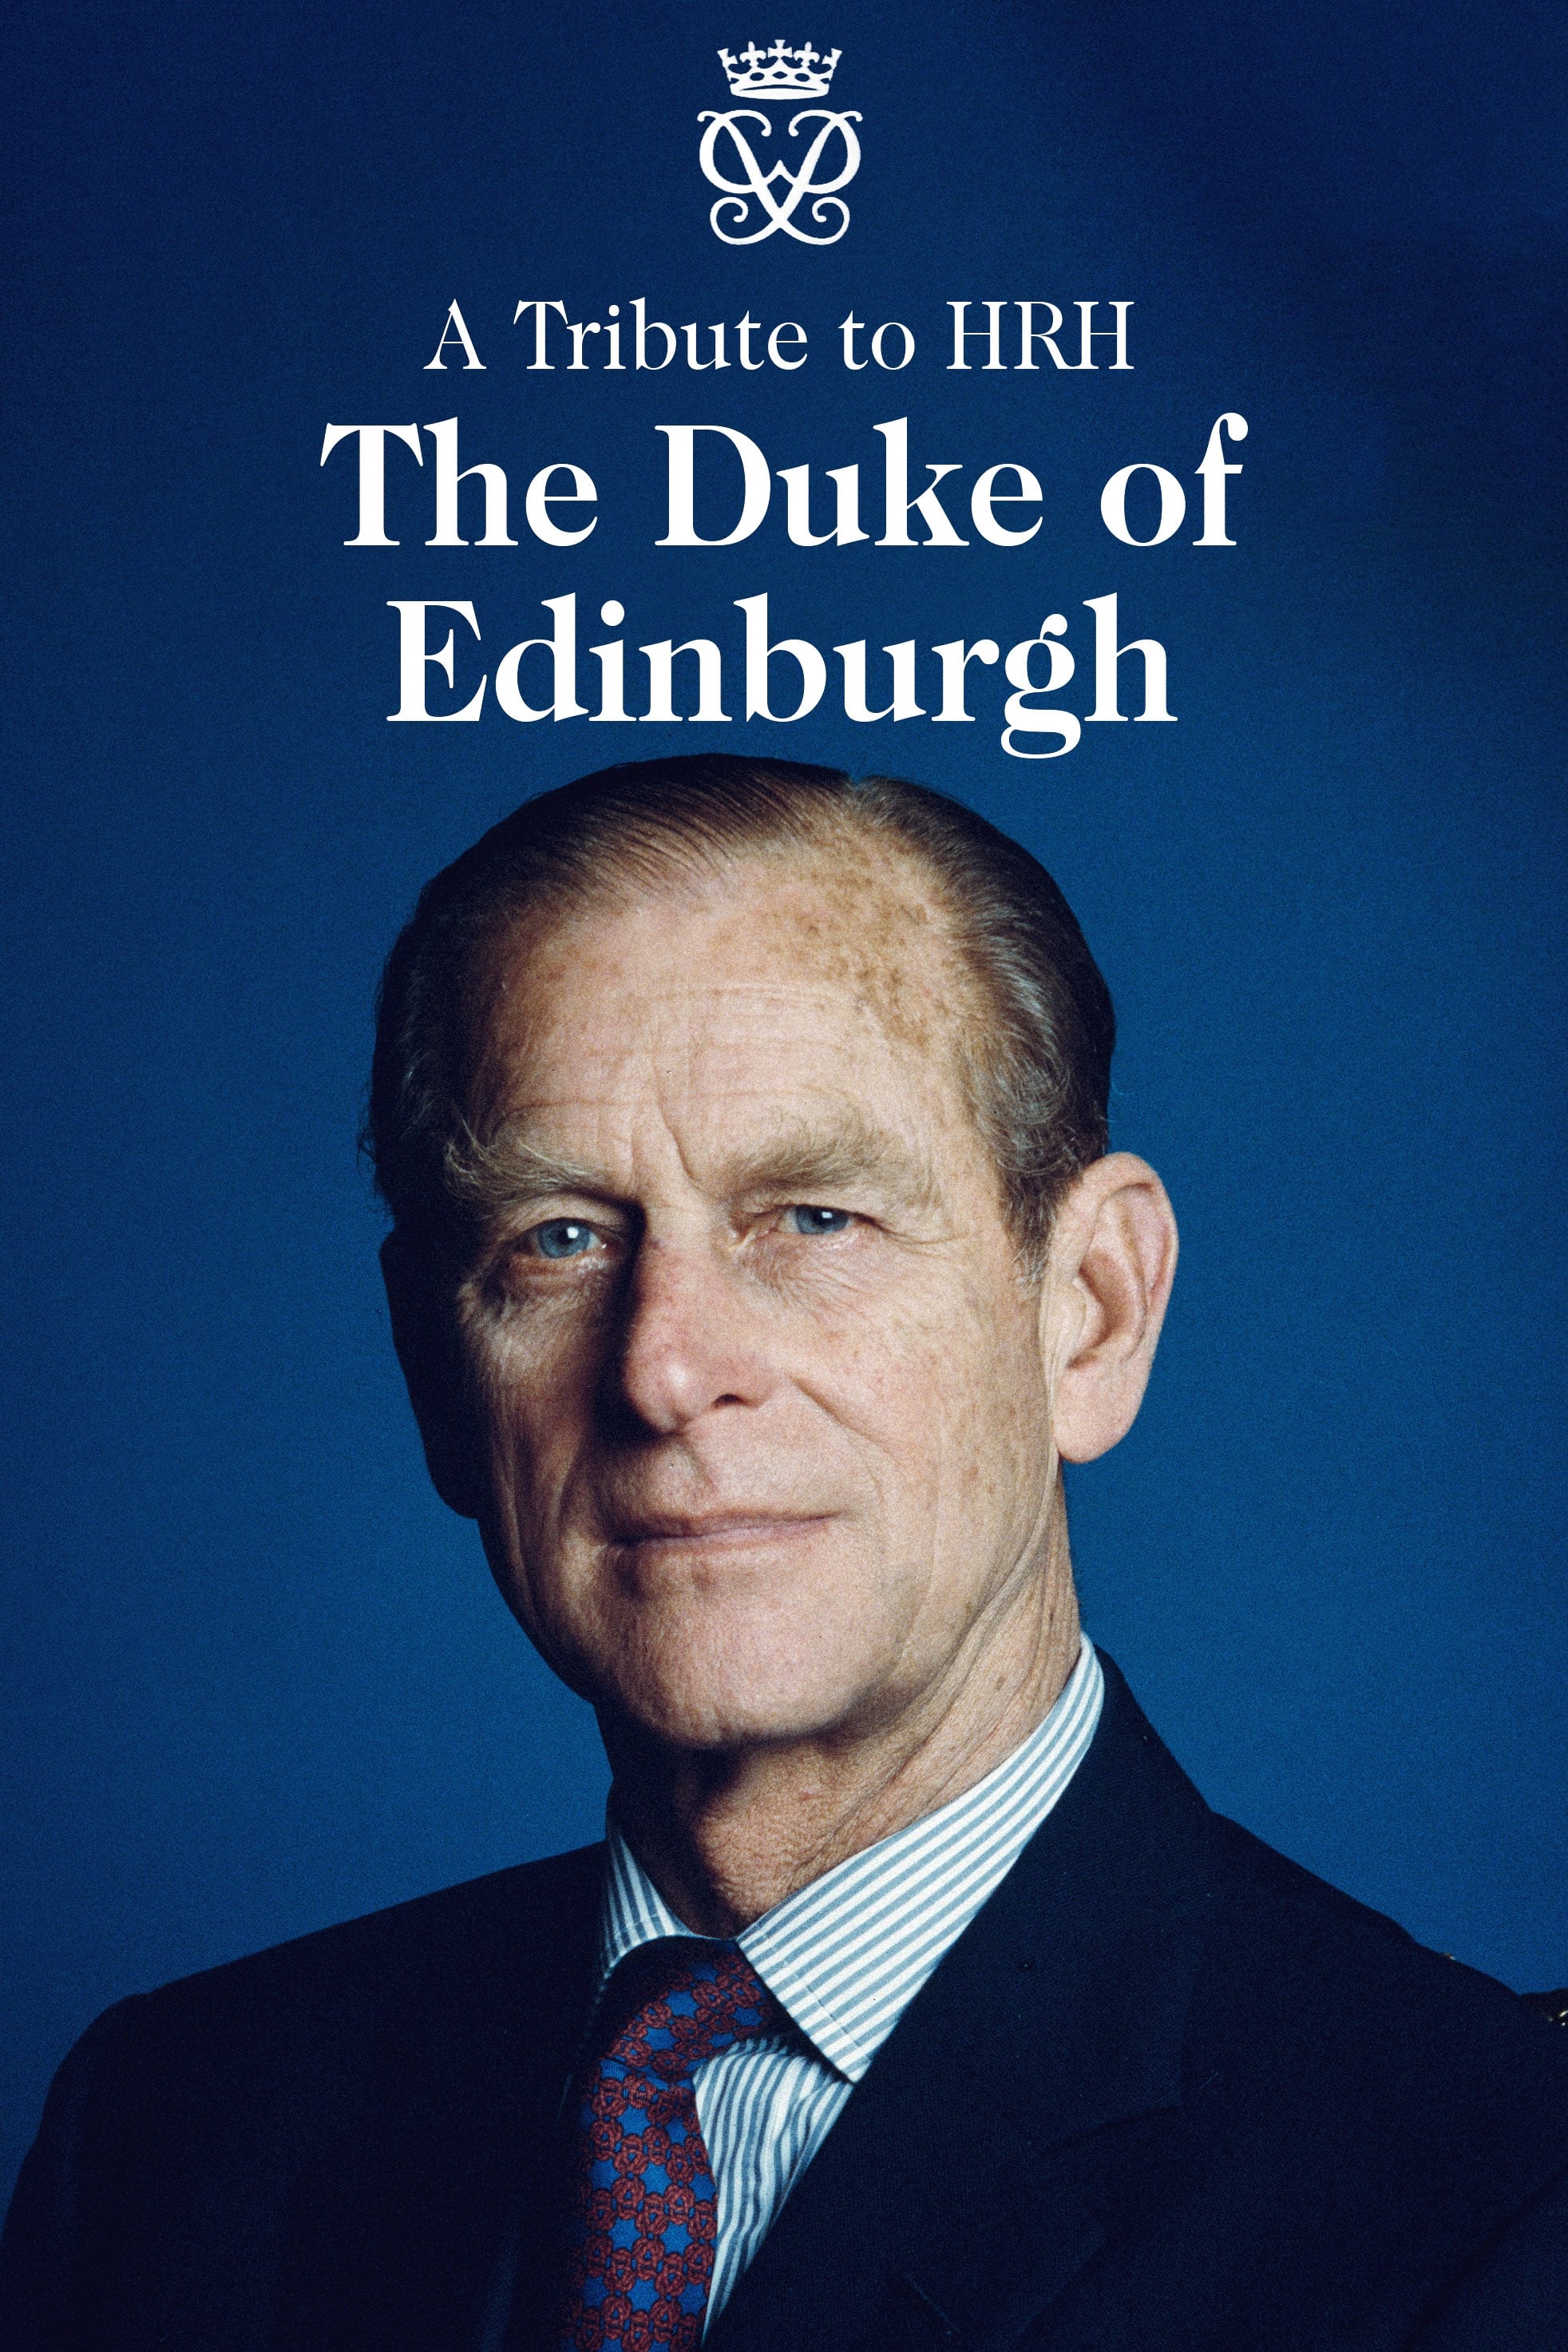 A Tribute to HRH Duke of Edinburgh